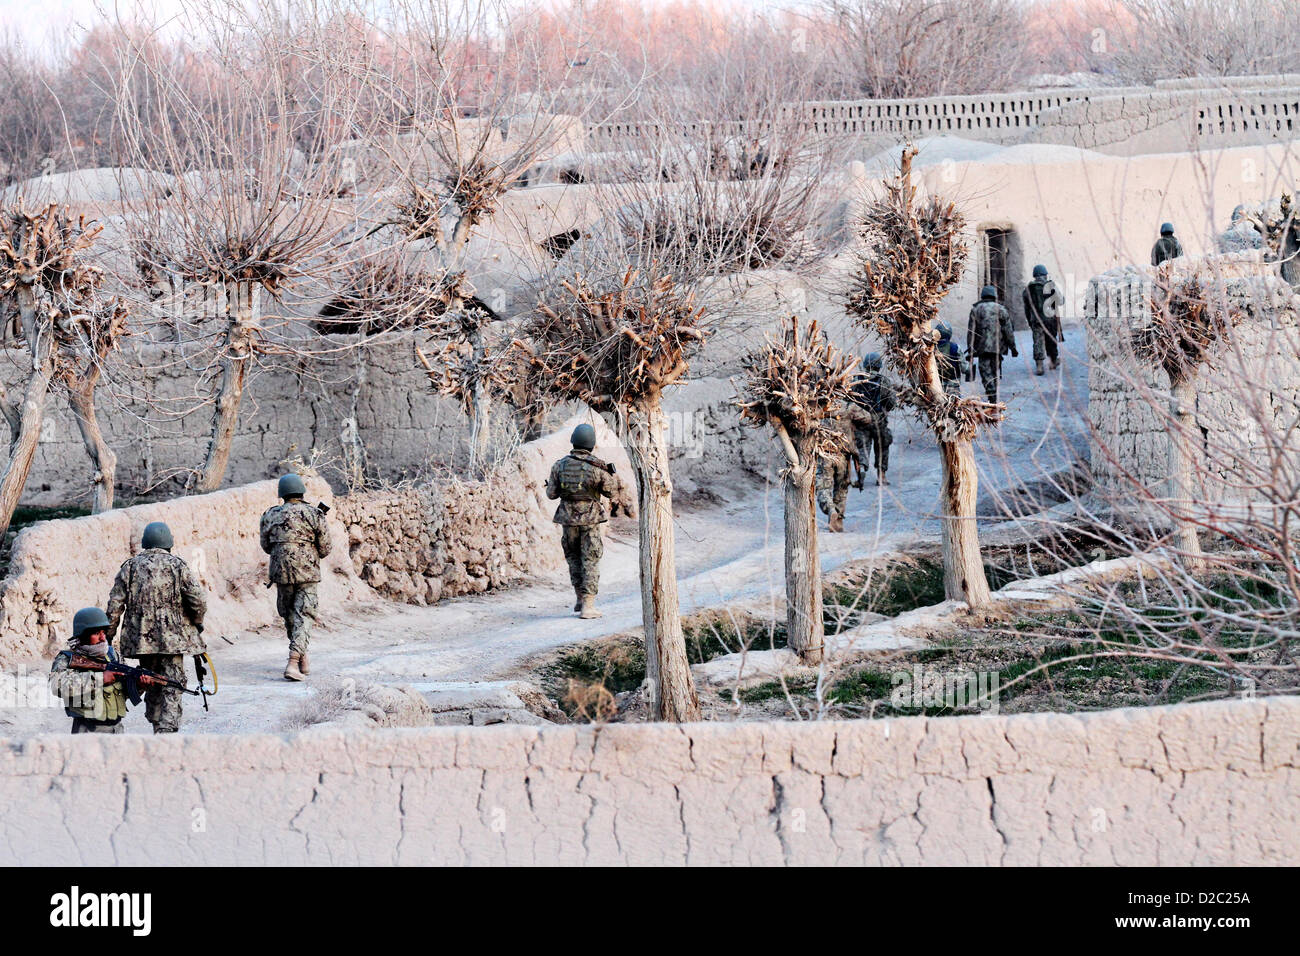 L Esercito nazionale afgano pattuglia di soldati durante una operazione di sicurezza gennaio 19, 2-13 nella provincia di Farah, Afghanistan. Foto Stock